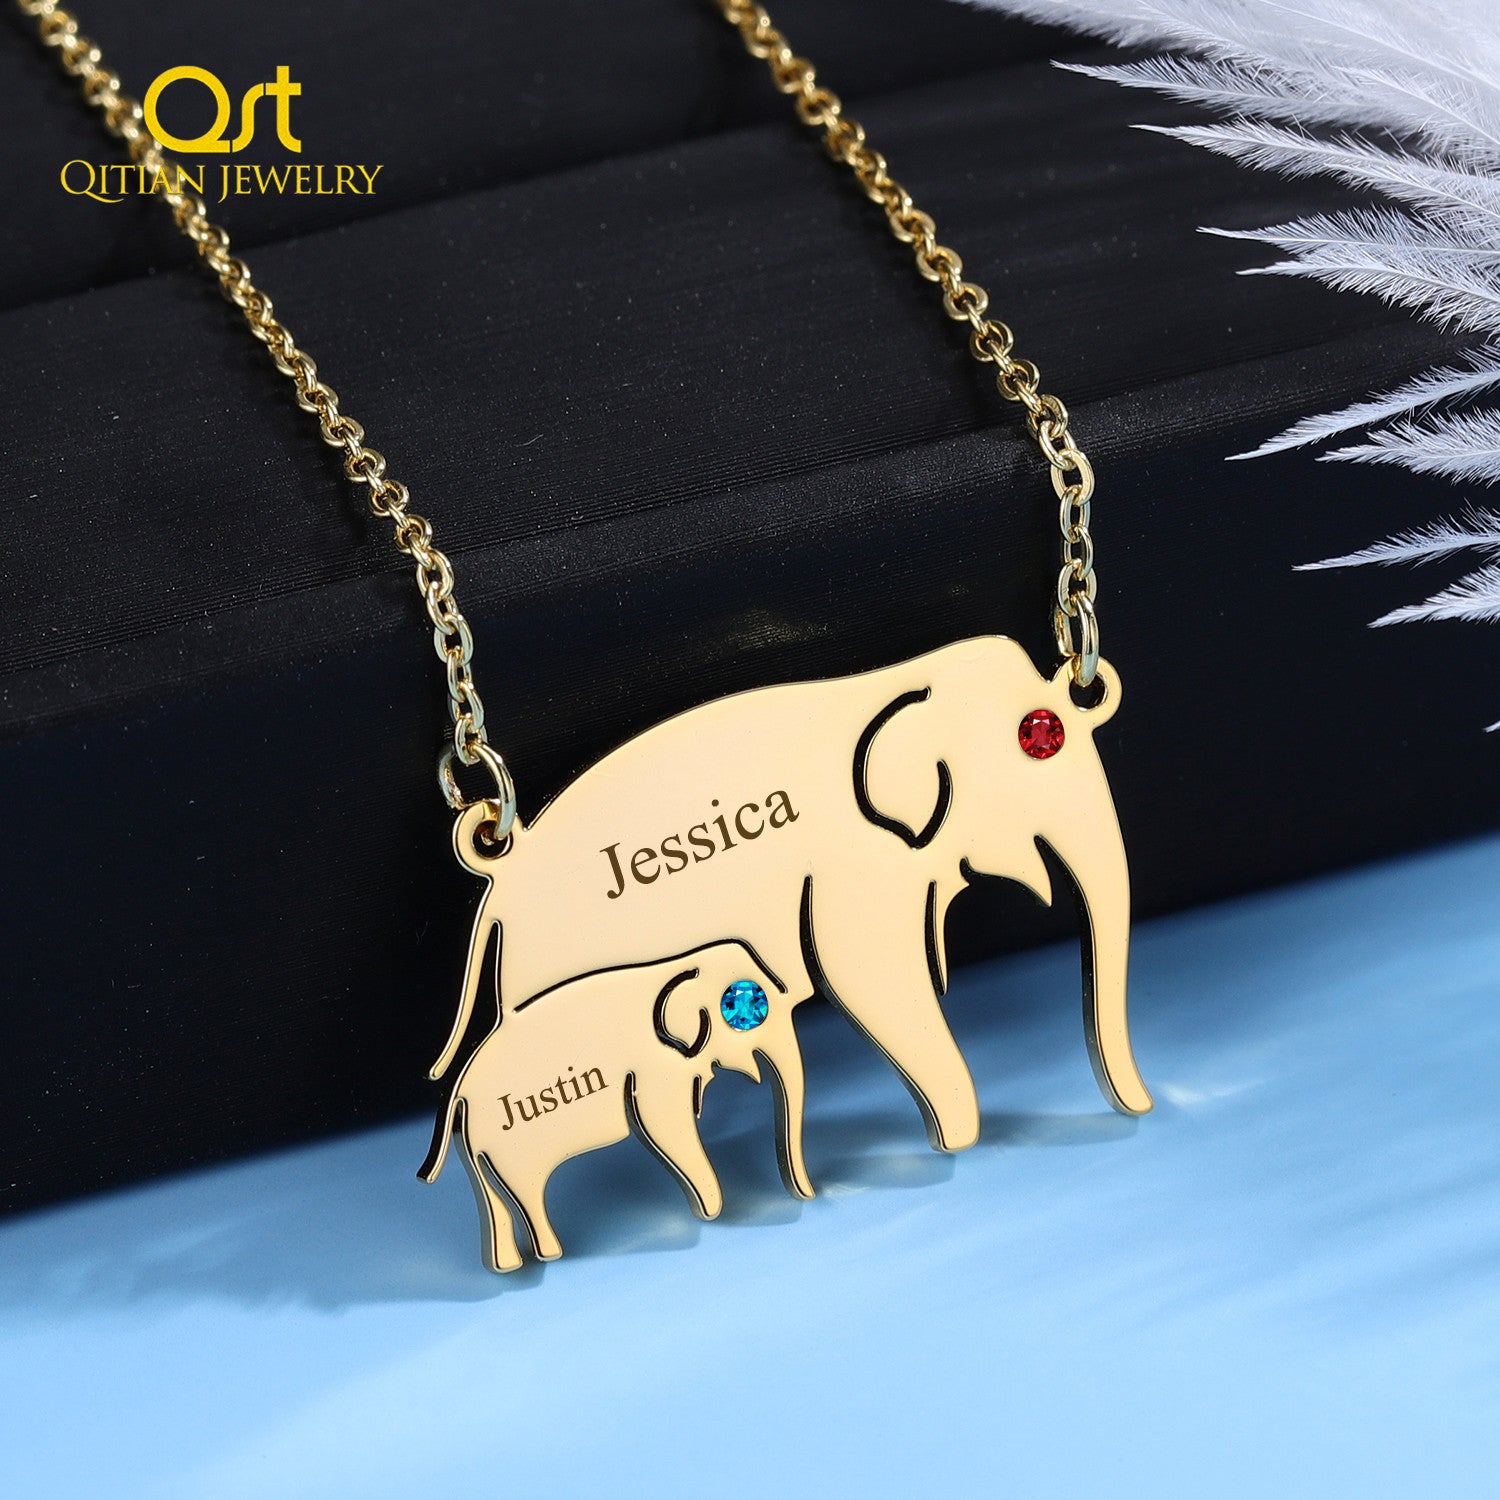 Personalized Elephant Pendant Necklace